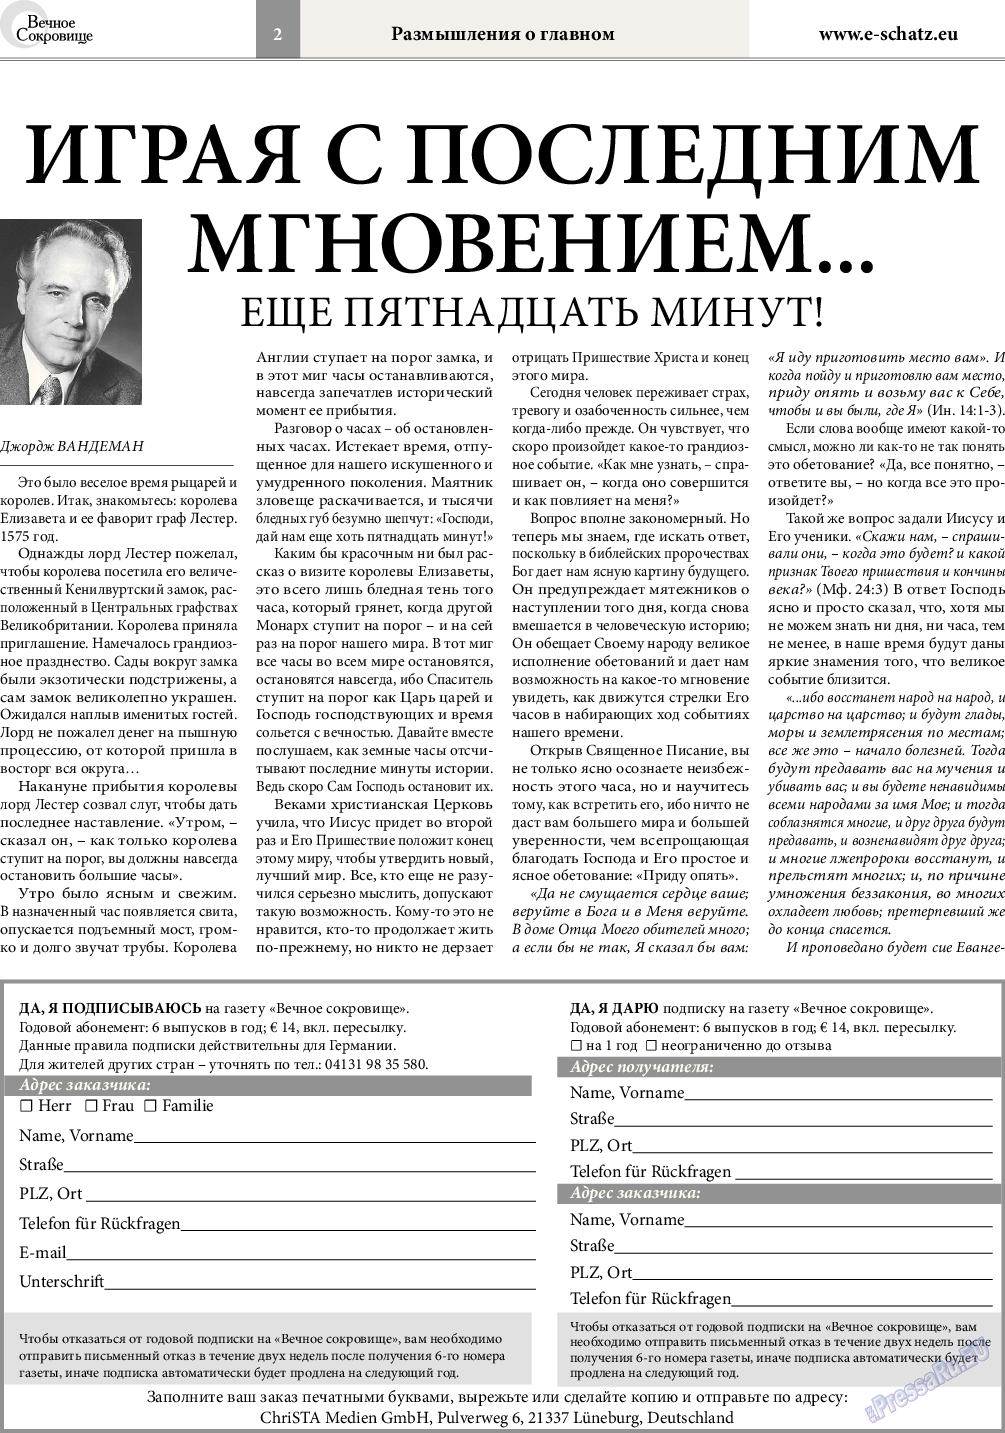 Вечное сокровище, газета. 2015 №4 стр.2